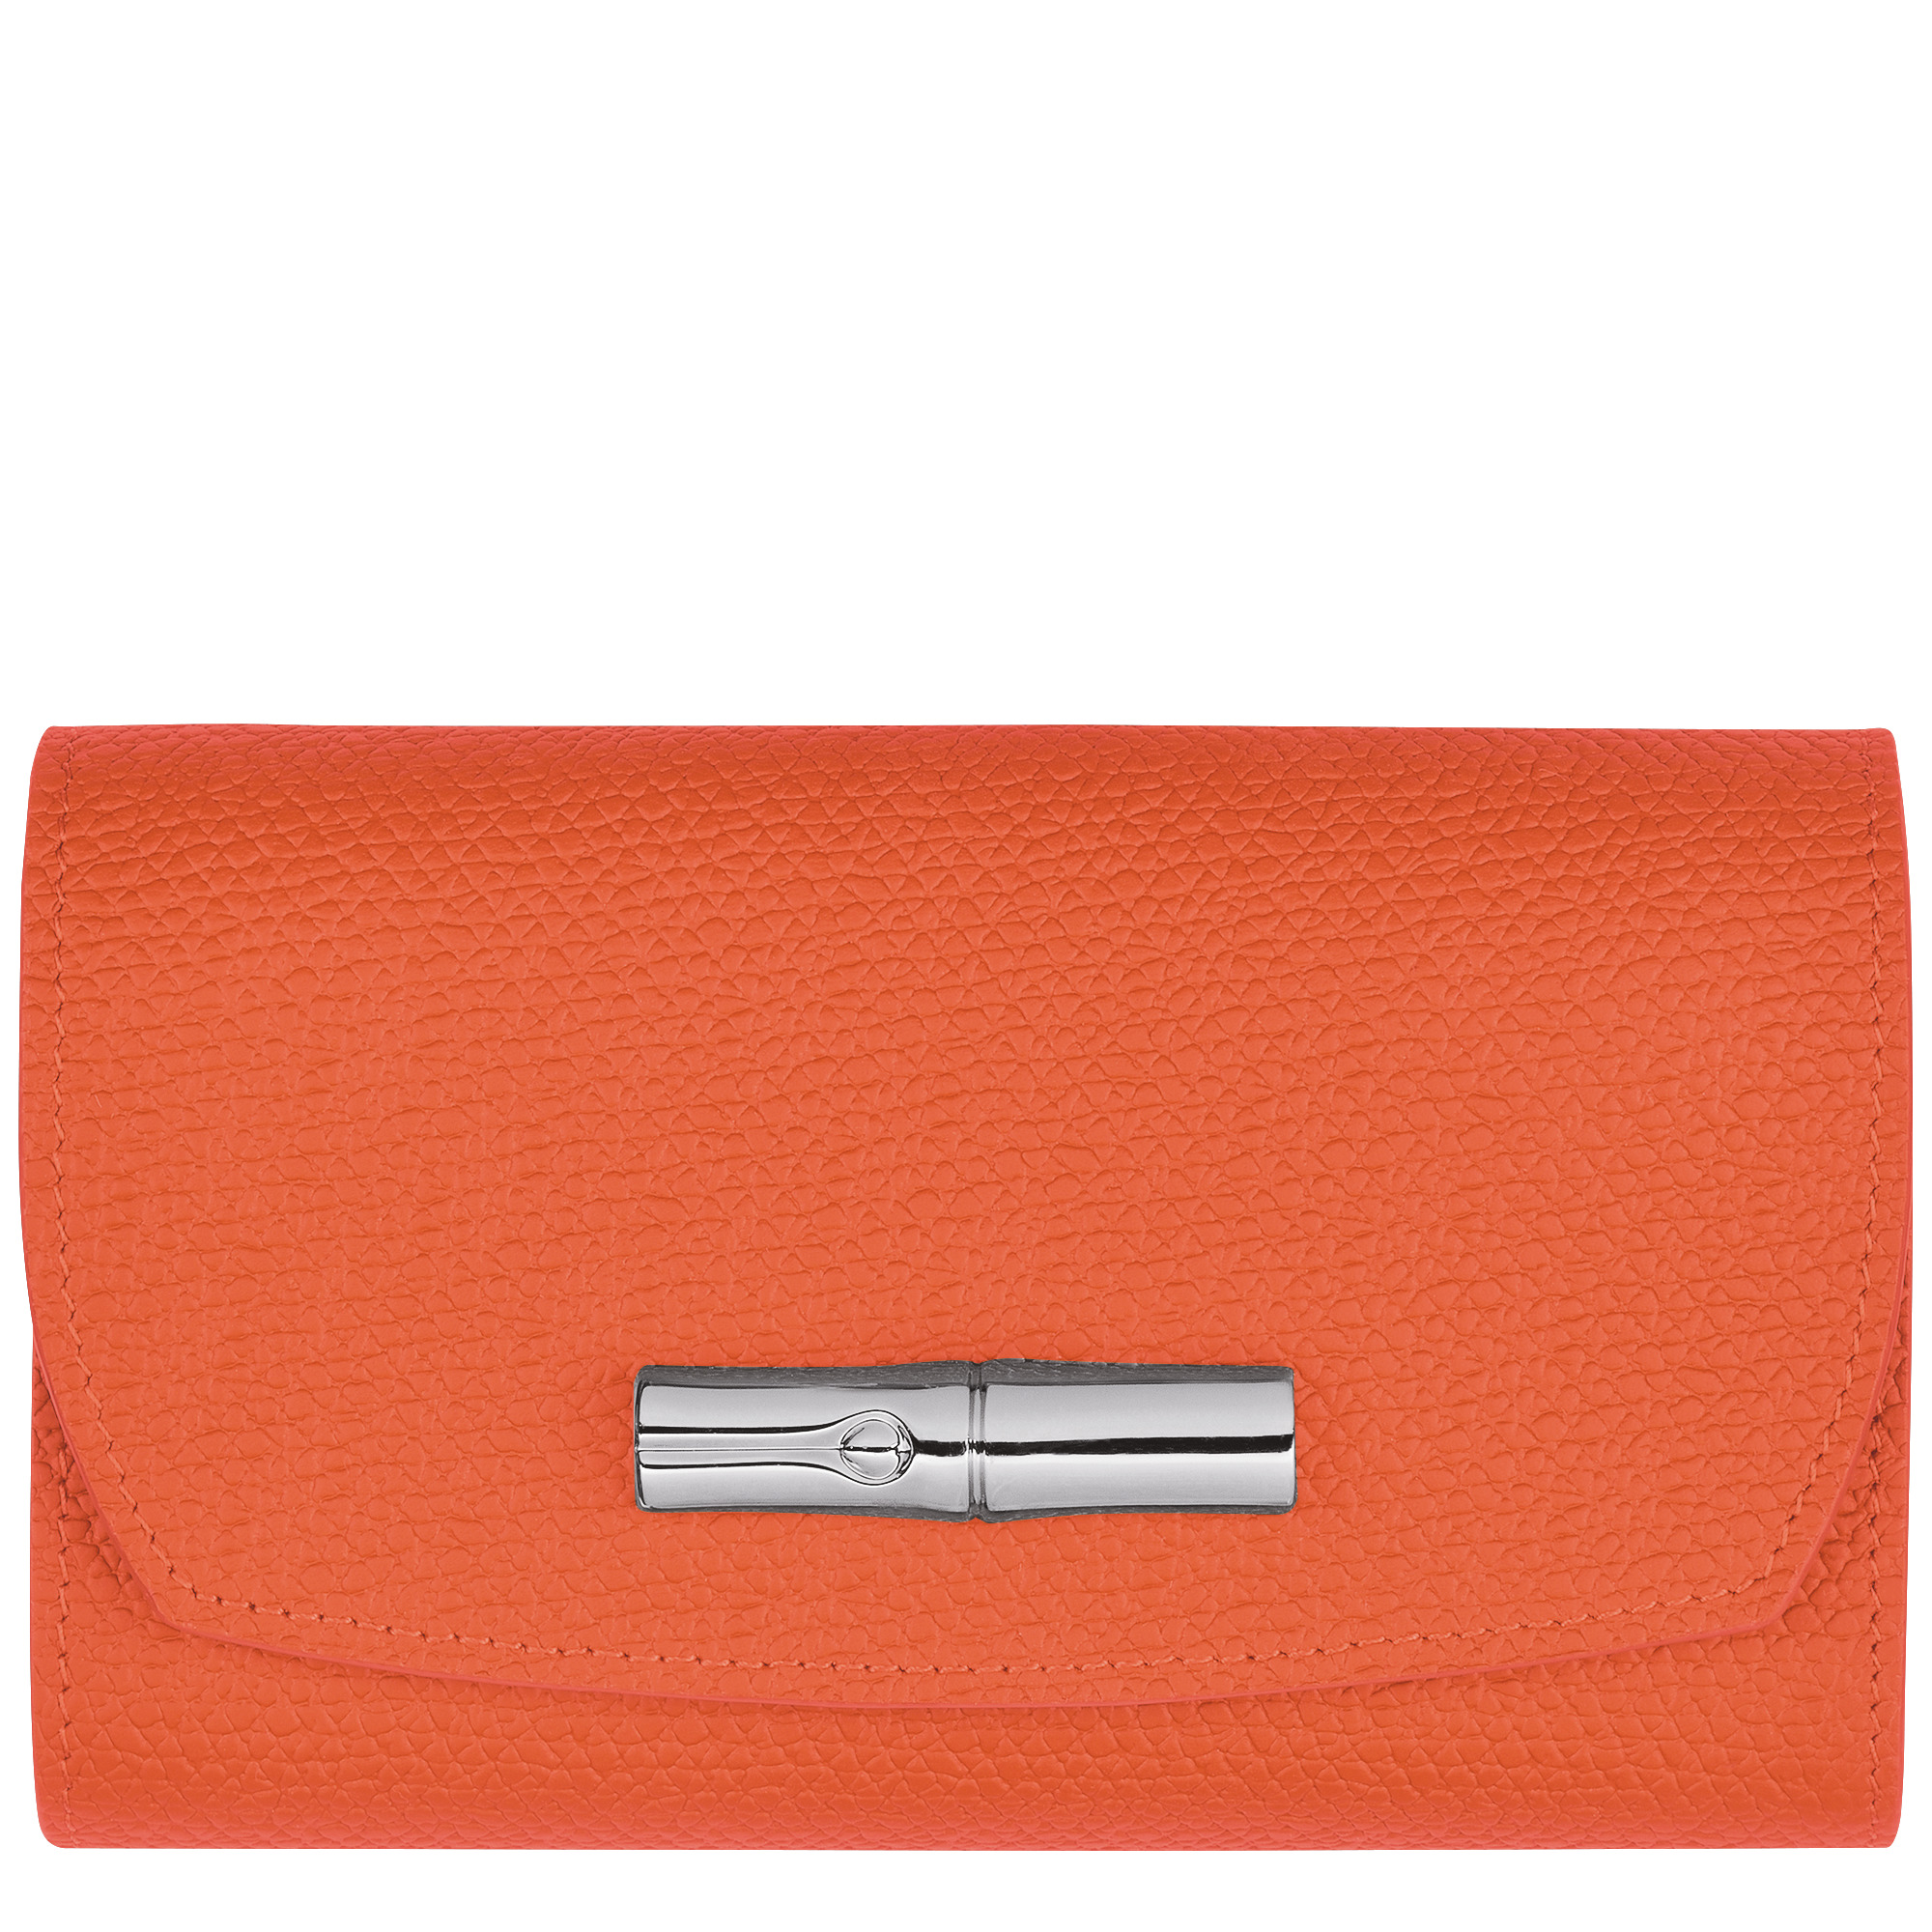 Roseau Wallet Orange - Leather - 1